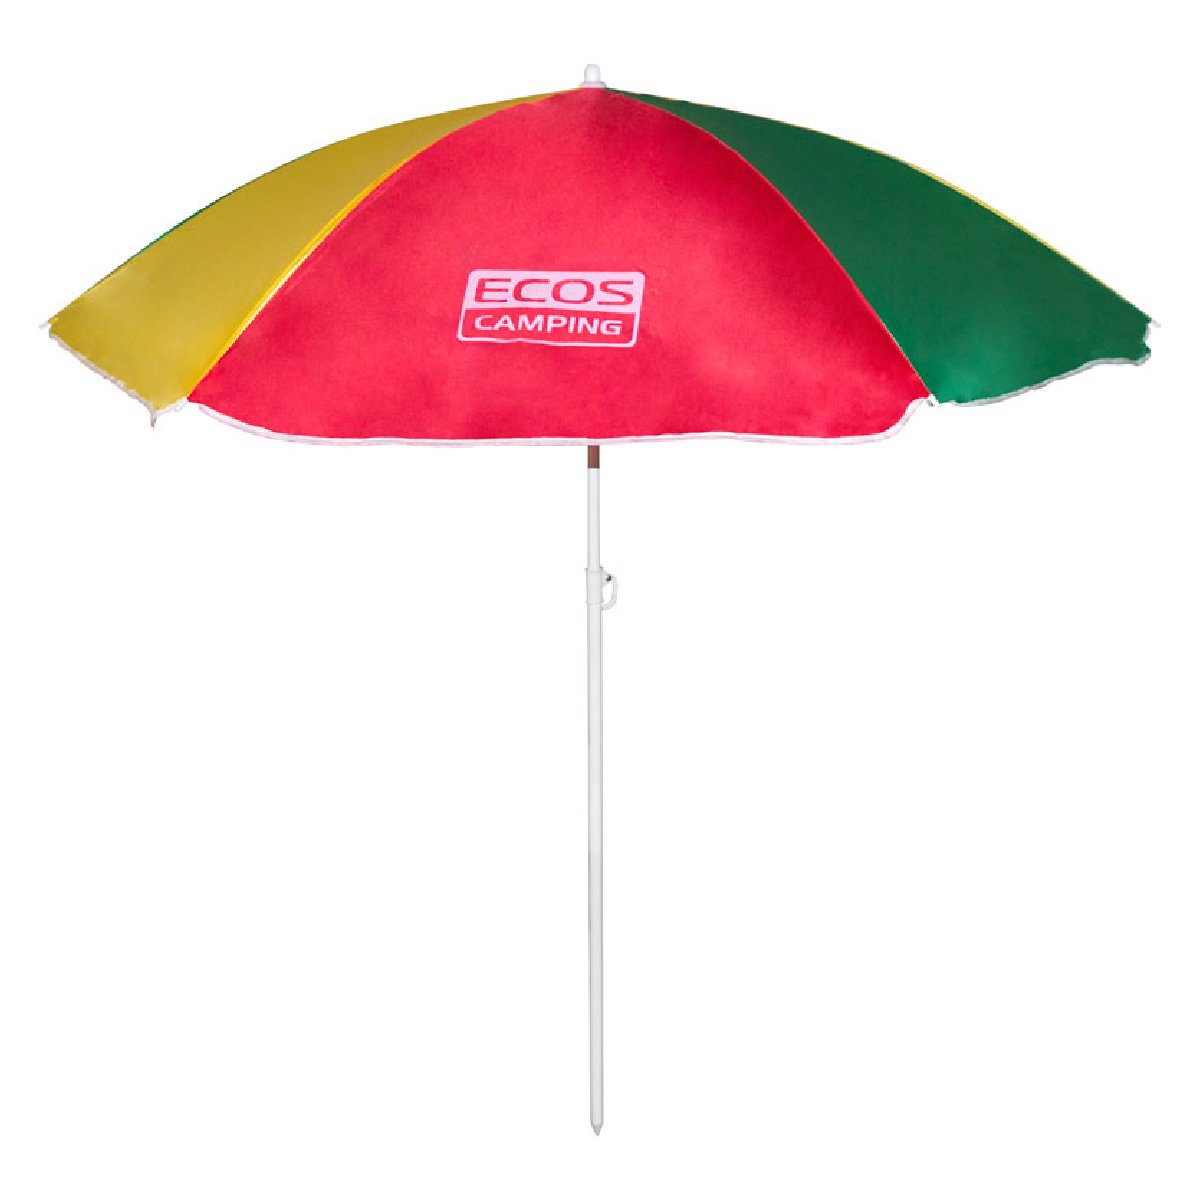 Зонт пляжный Ecos BU-04 160x6 см, складная штанга 145 смКупить